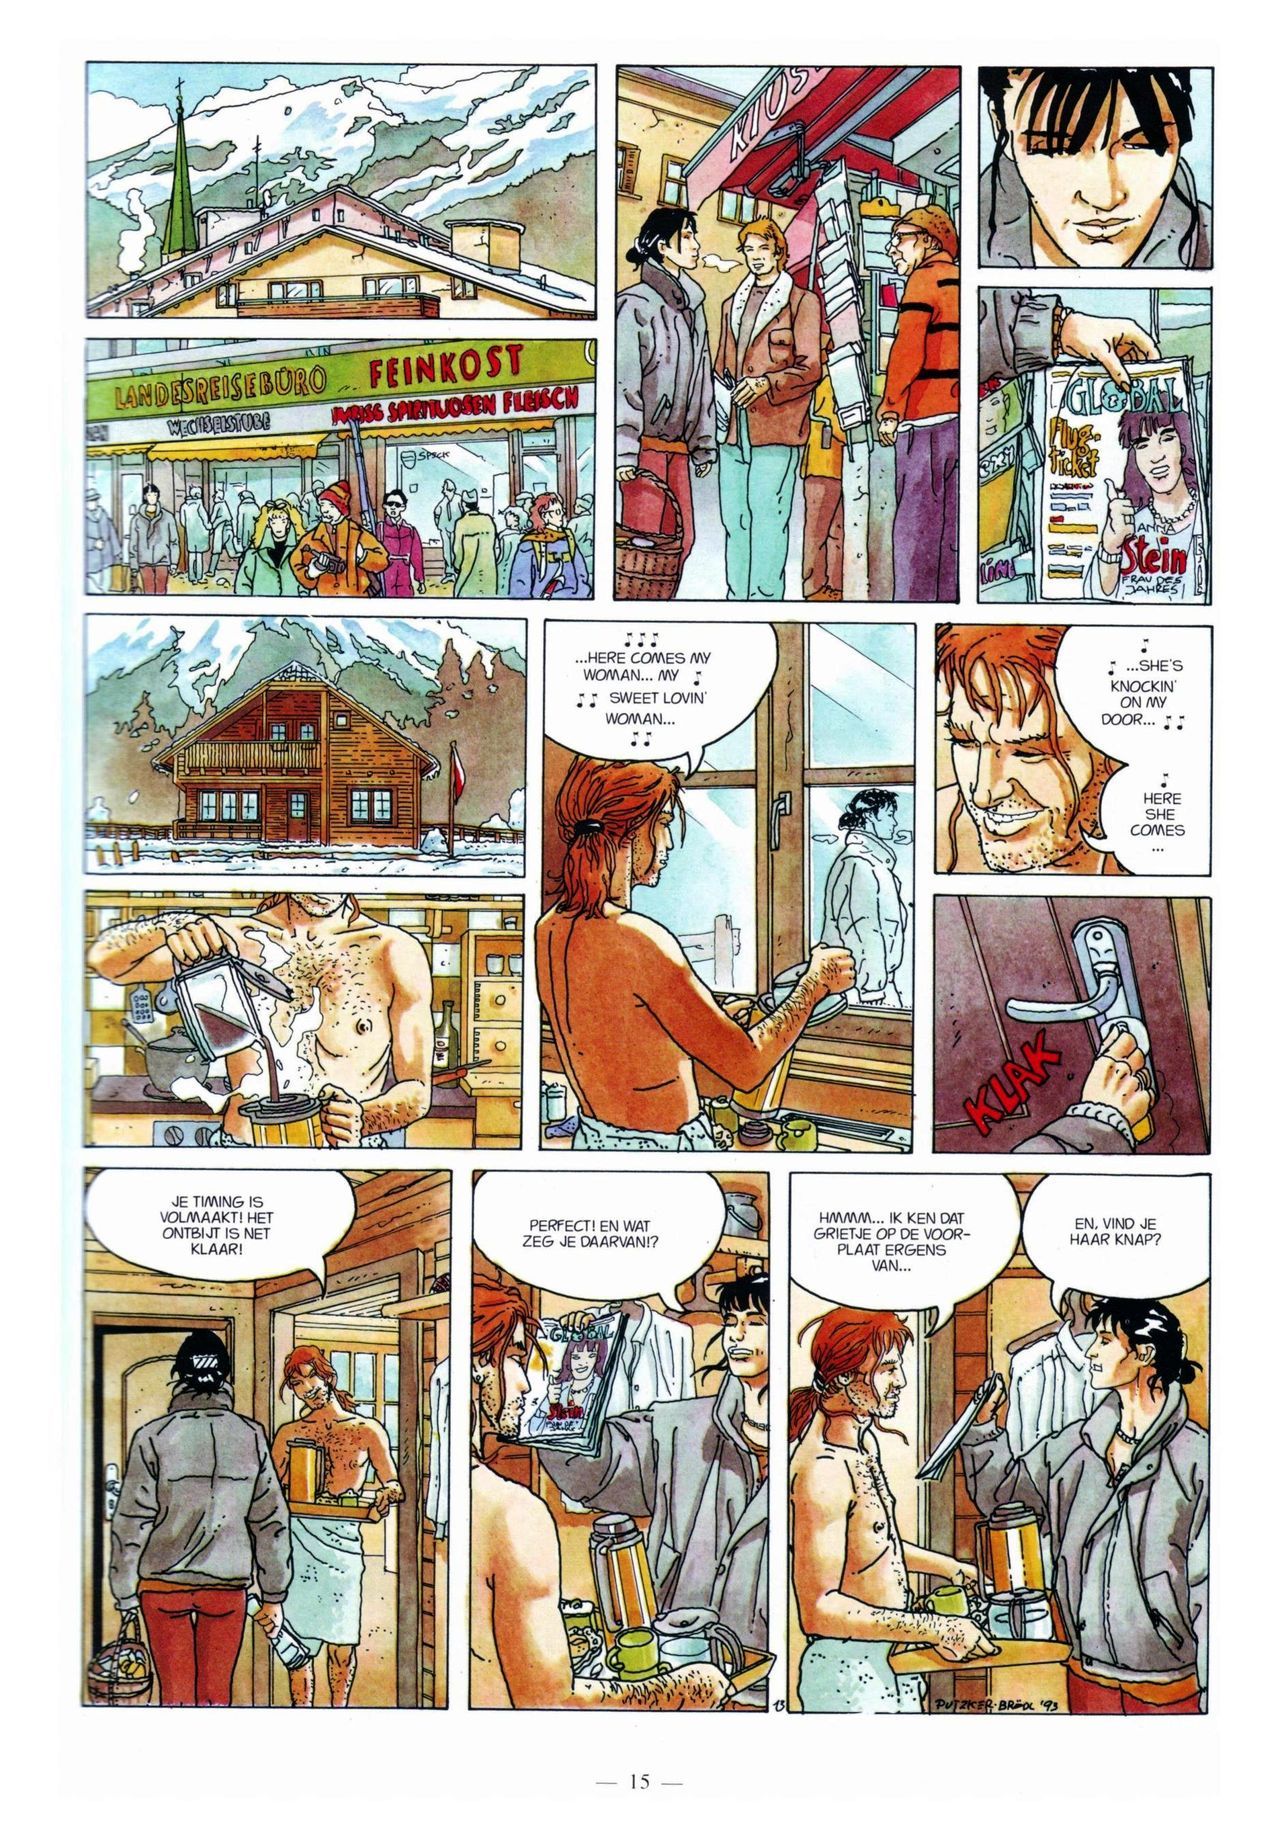 Anna Stein - 03 - De Laatste Alpengloed (Dutch) Engelstalige strips die op deze site staan, hier is de Nederlandse uitgave! 15